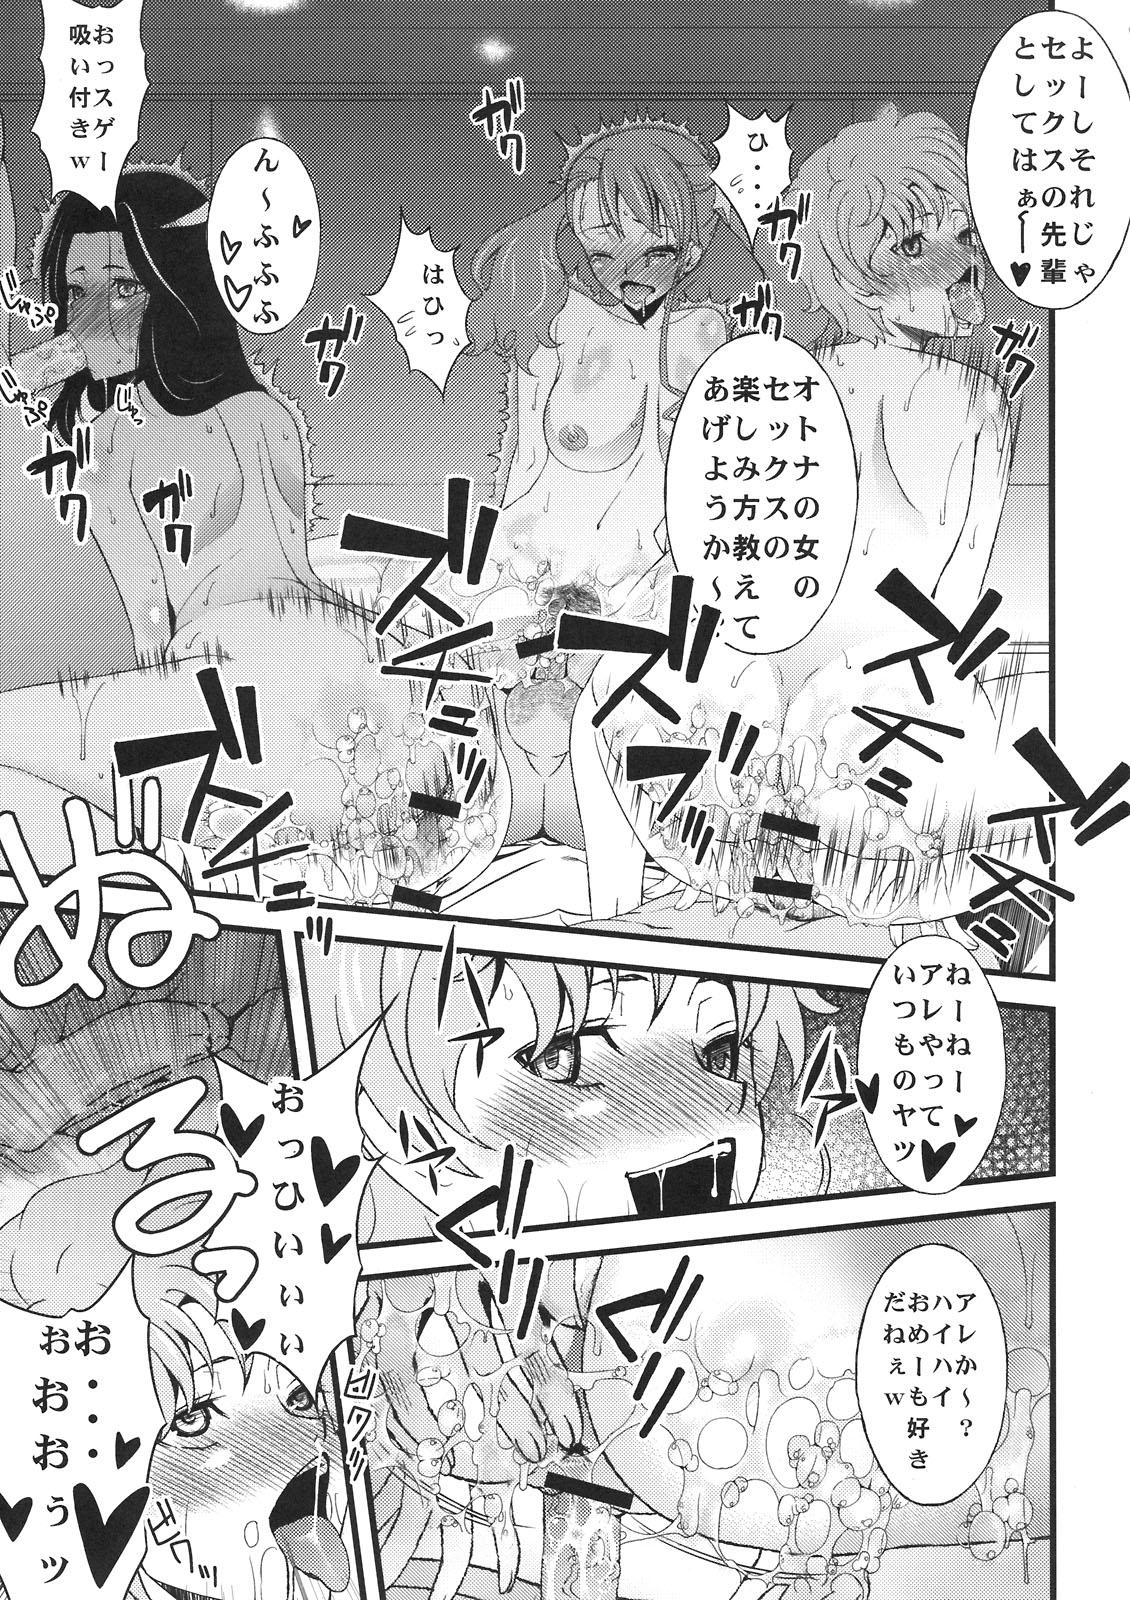 Hot Blow Jobs Anal Sex - Ano hi mita hana no namae wo bokutachi wa mada shiranai Novinho - Page 9